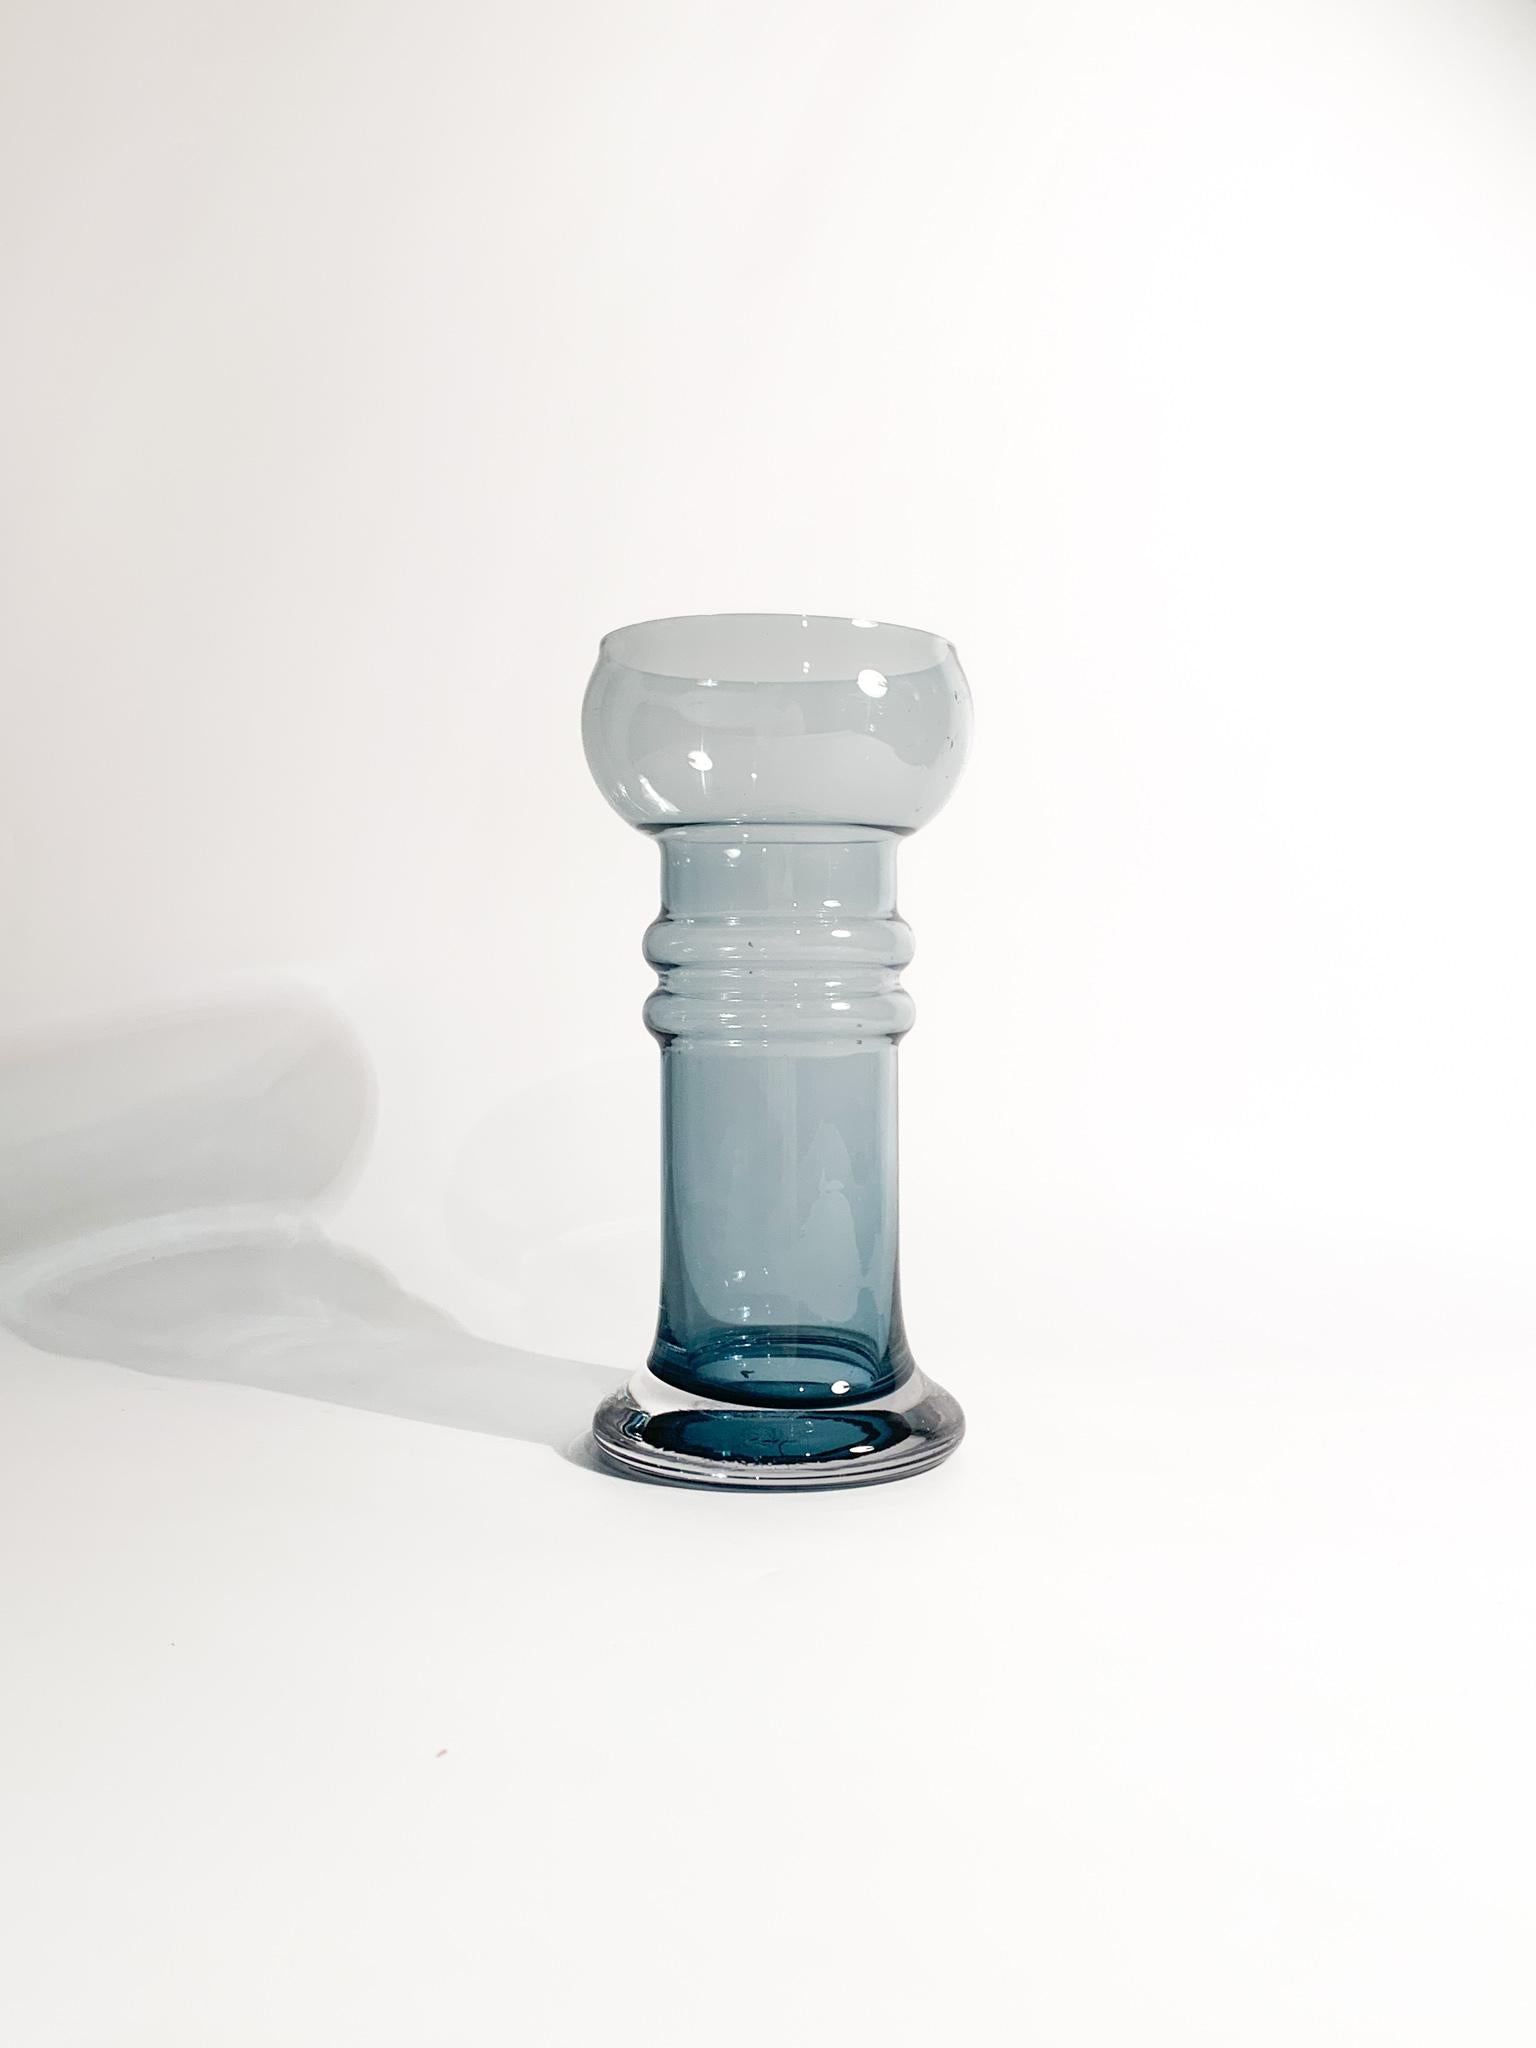 Vase aus mundgeblasenem finnischem blauem Glas, entworfen von Tamara Aladin und hergestellt von Riihimäki in den 1960er Jahren

Ø 11 cm h 20 cm